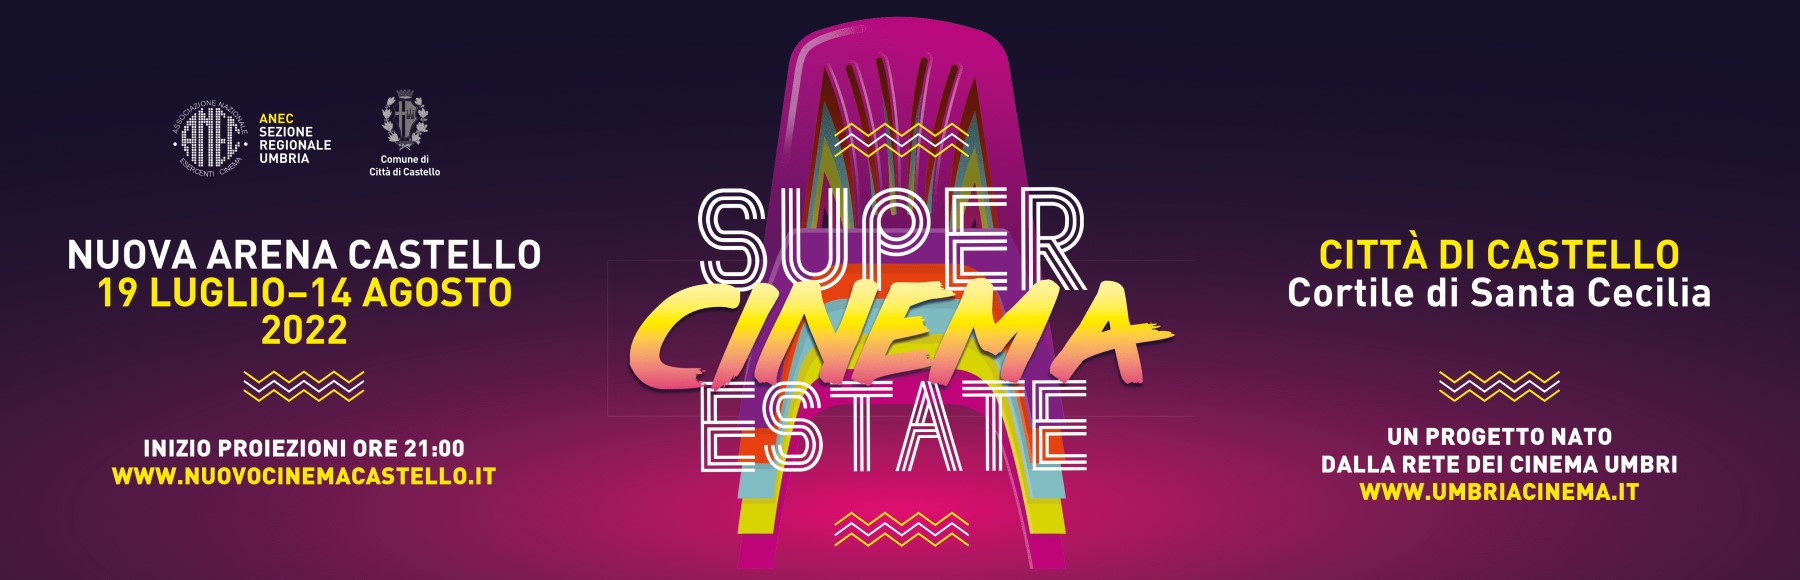 Programmazione Super Cinema Estate